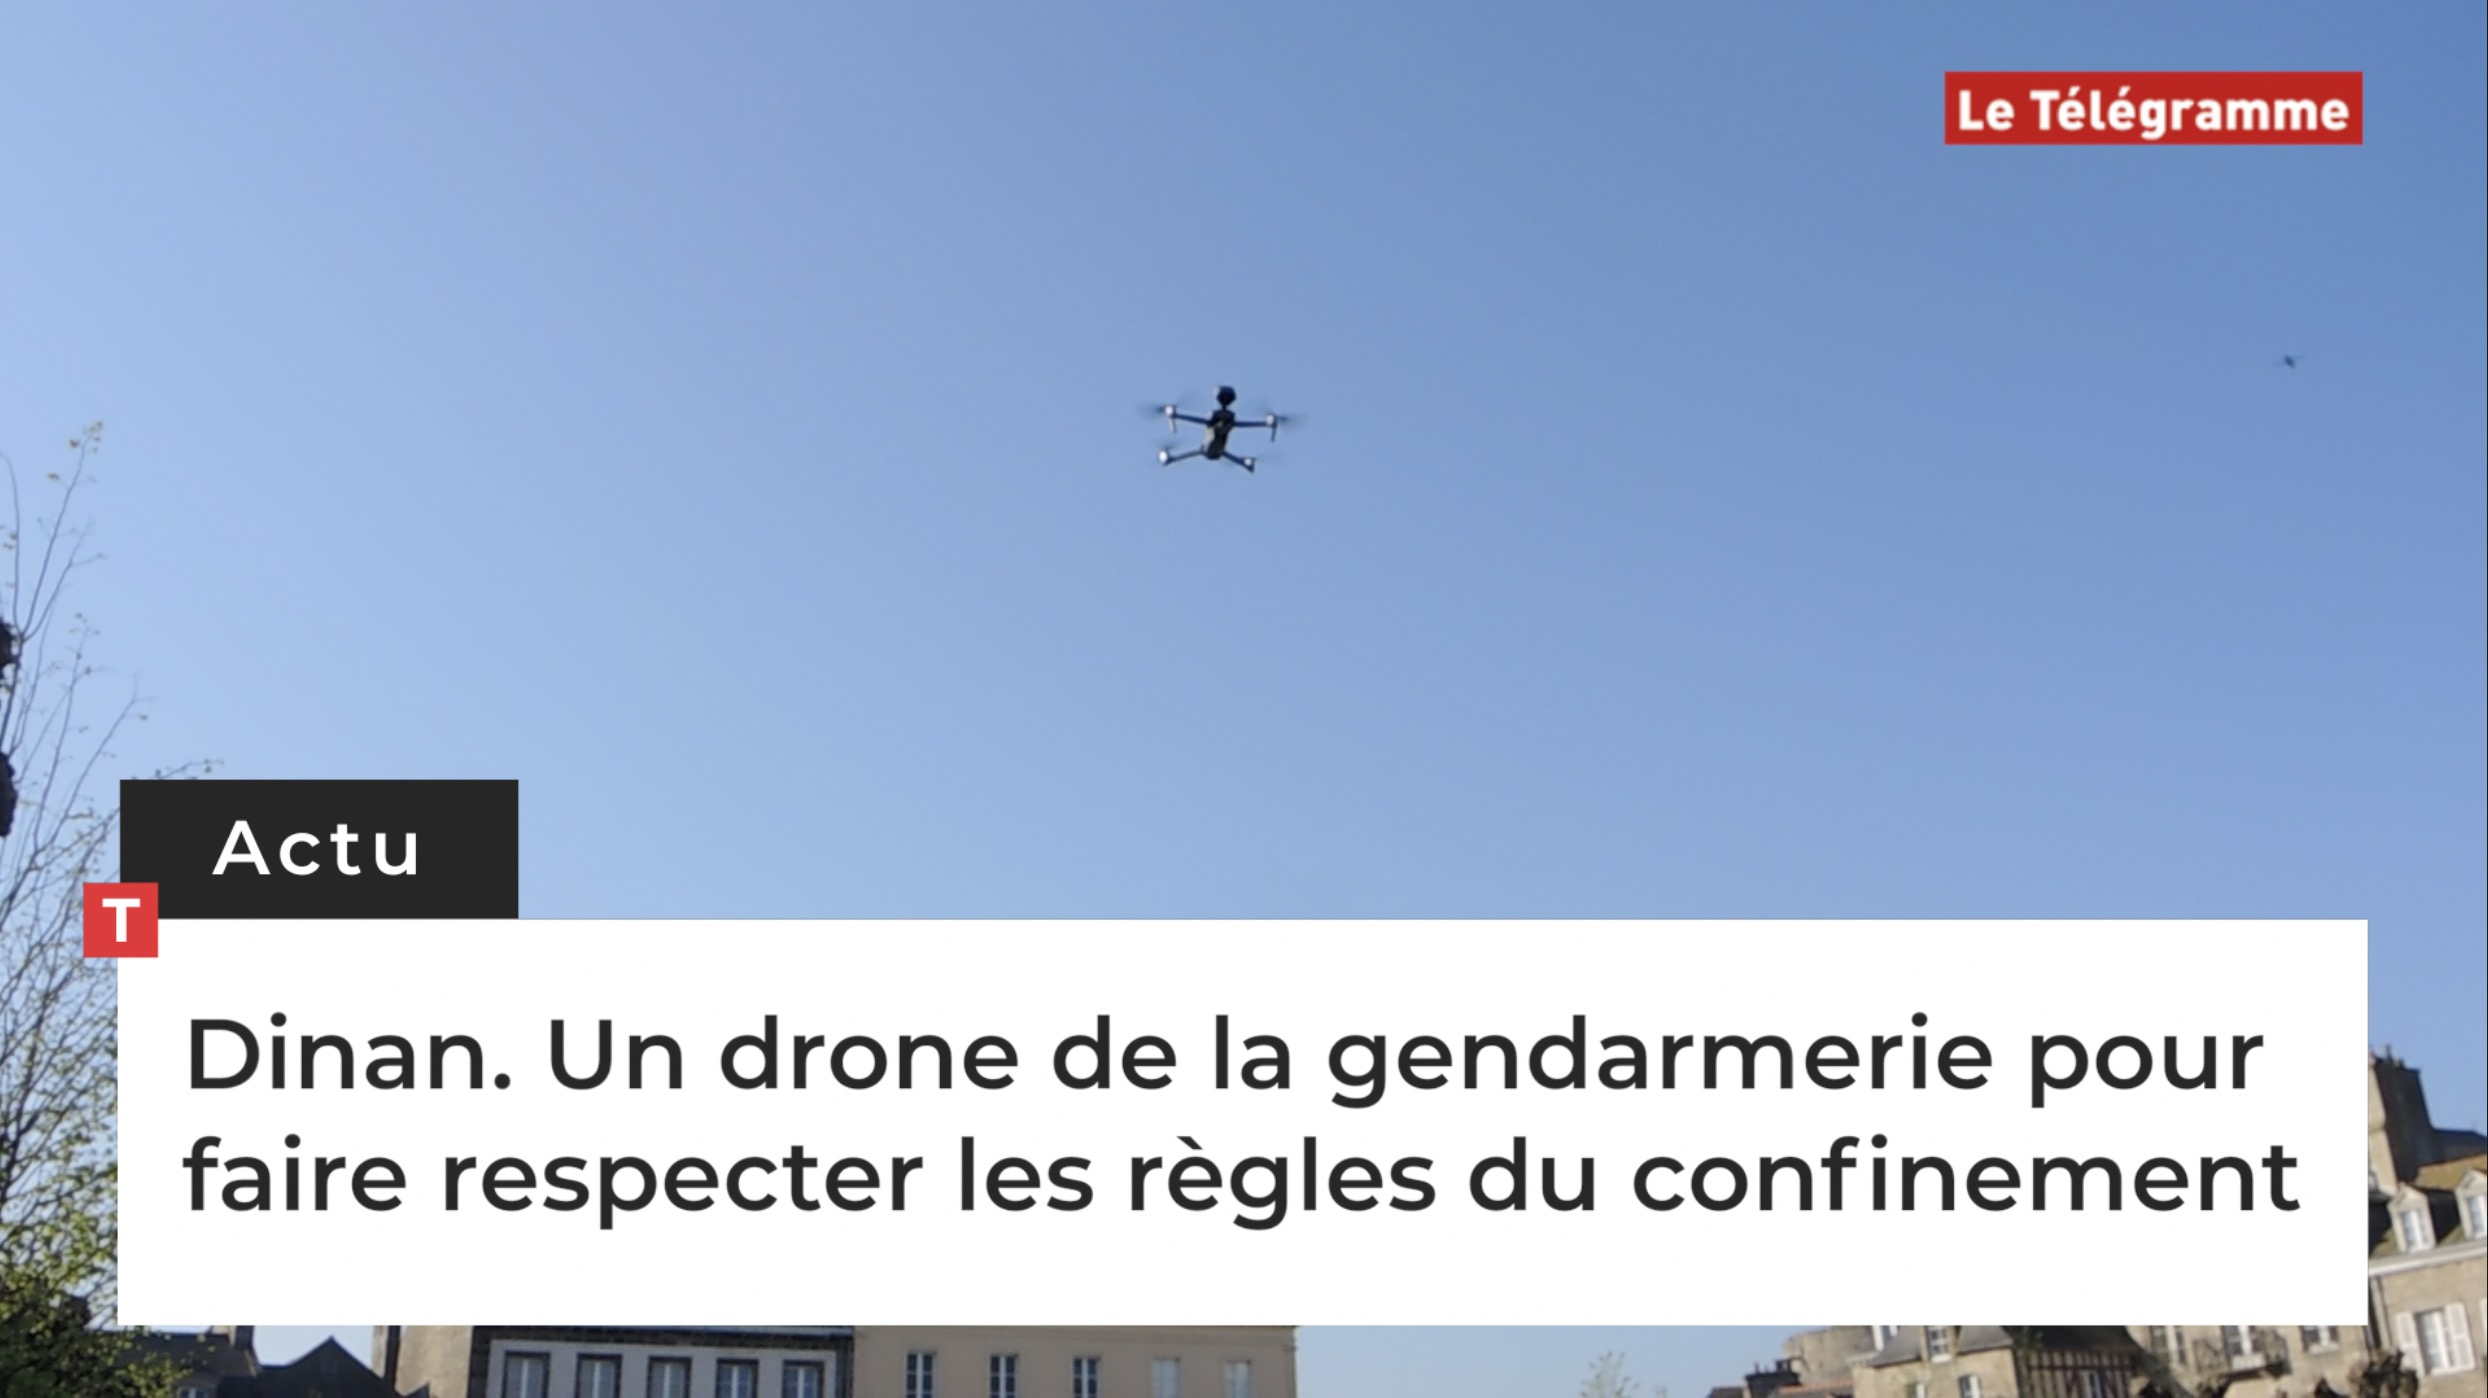 Dinan. Un drone de la gendarmerie pour faire respecter les règles du confinement (Le Télégramme)